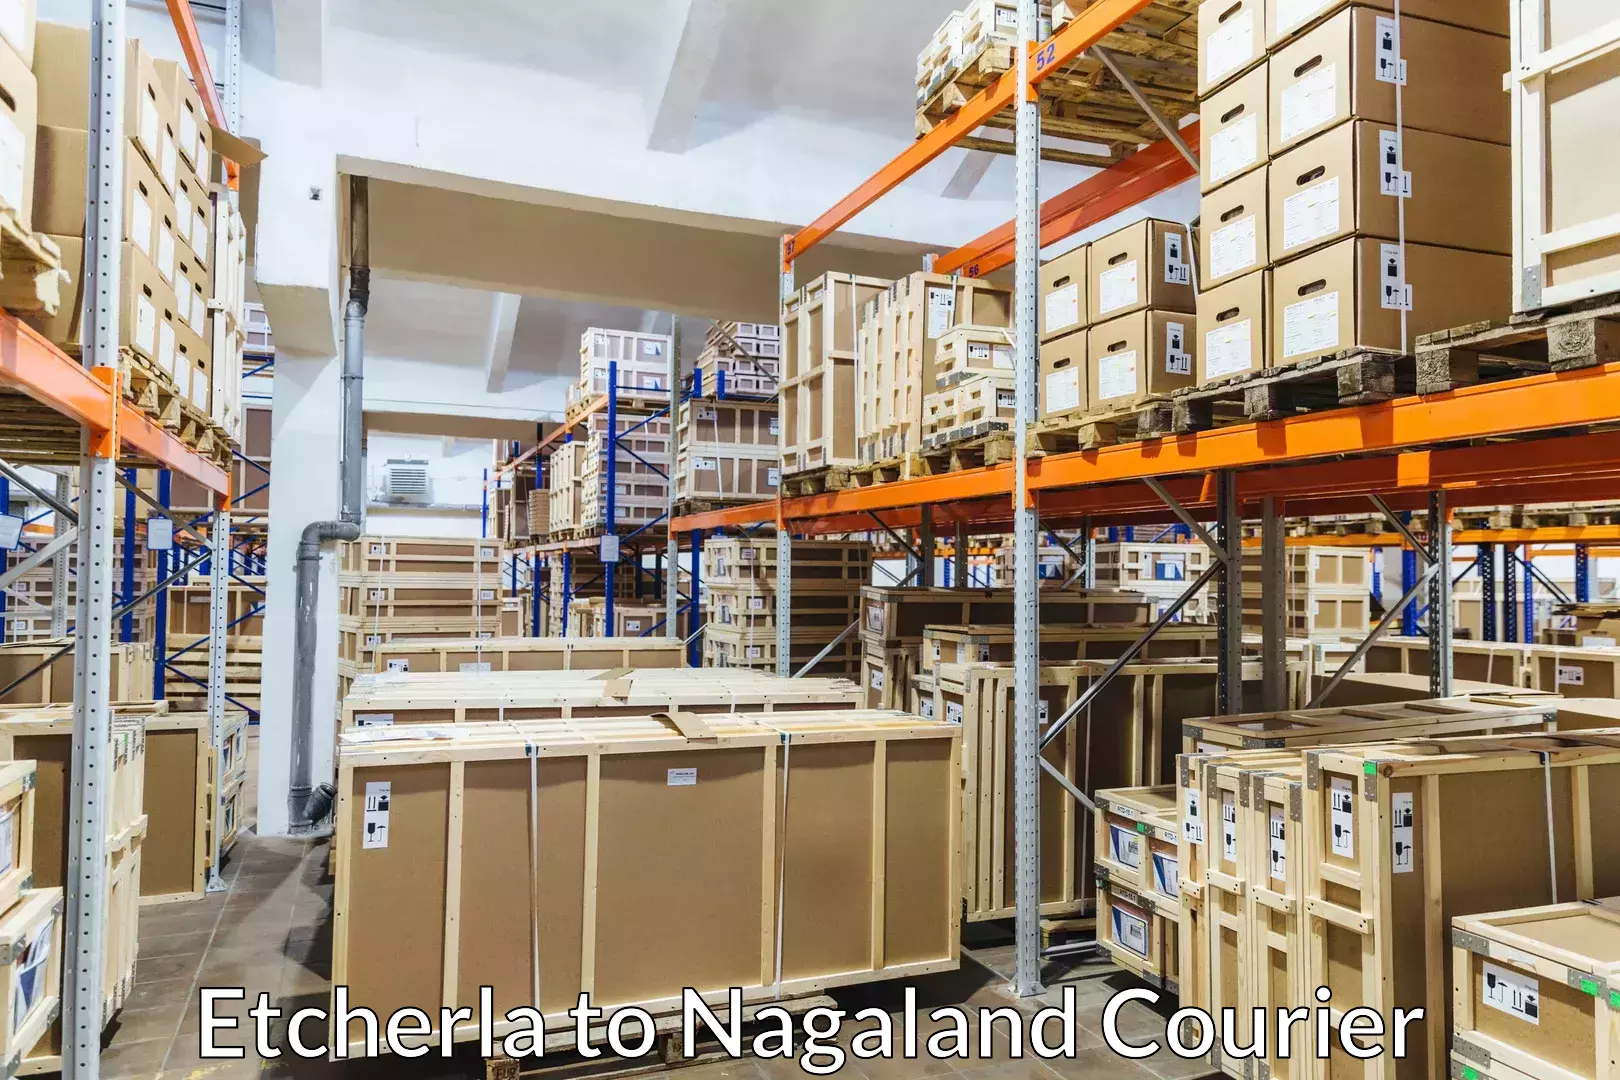 Customized furniture moving Etcherla to Nagaland